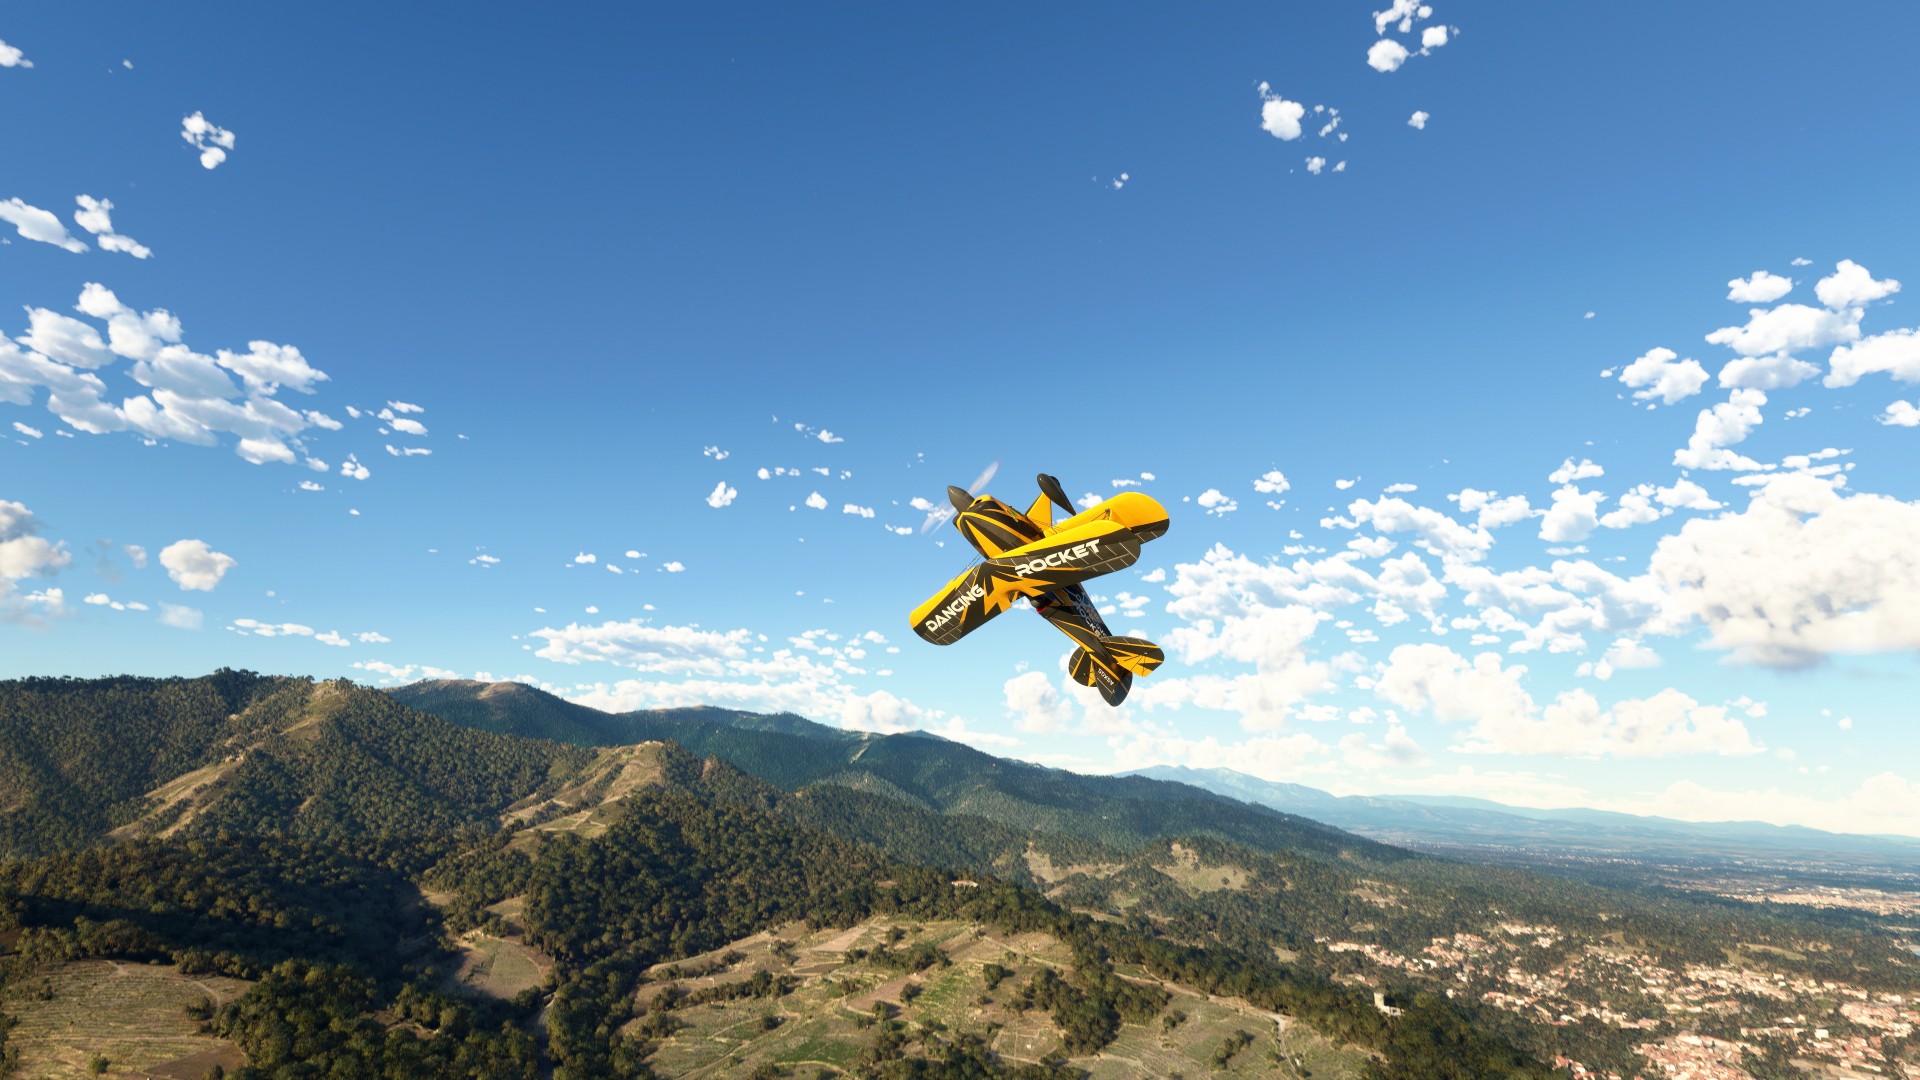 Flight Simulator” no Xbox é um marco tecnológico – e o início da